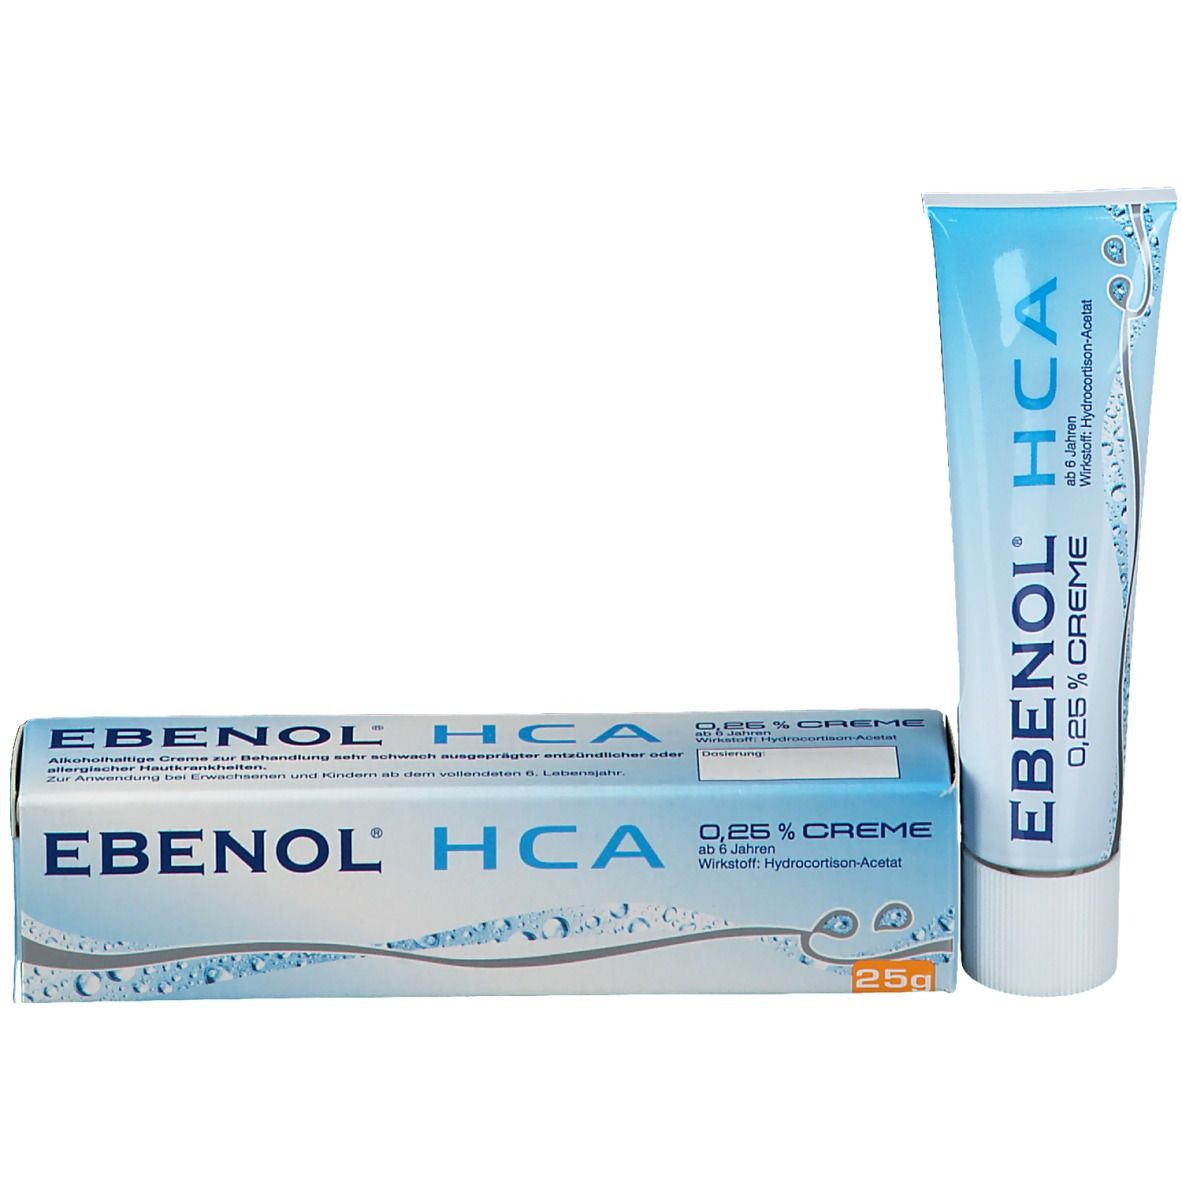 EBENOL® HCA 0,25% Creme